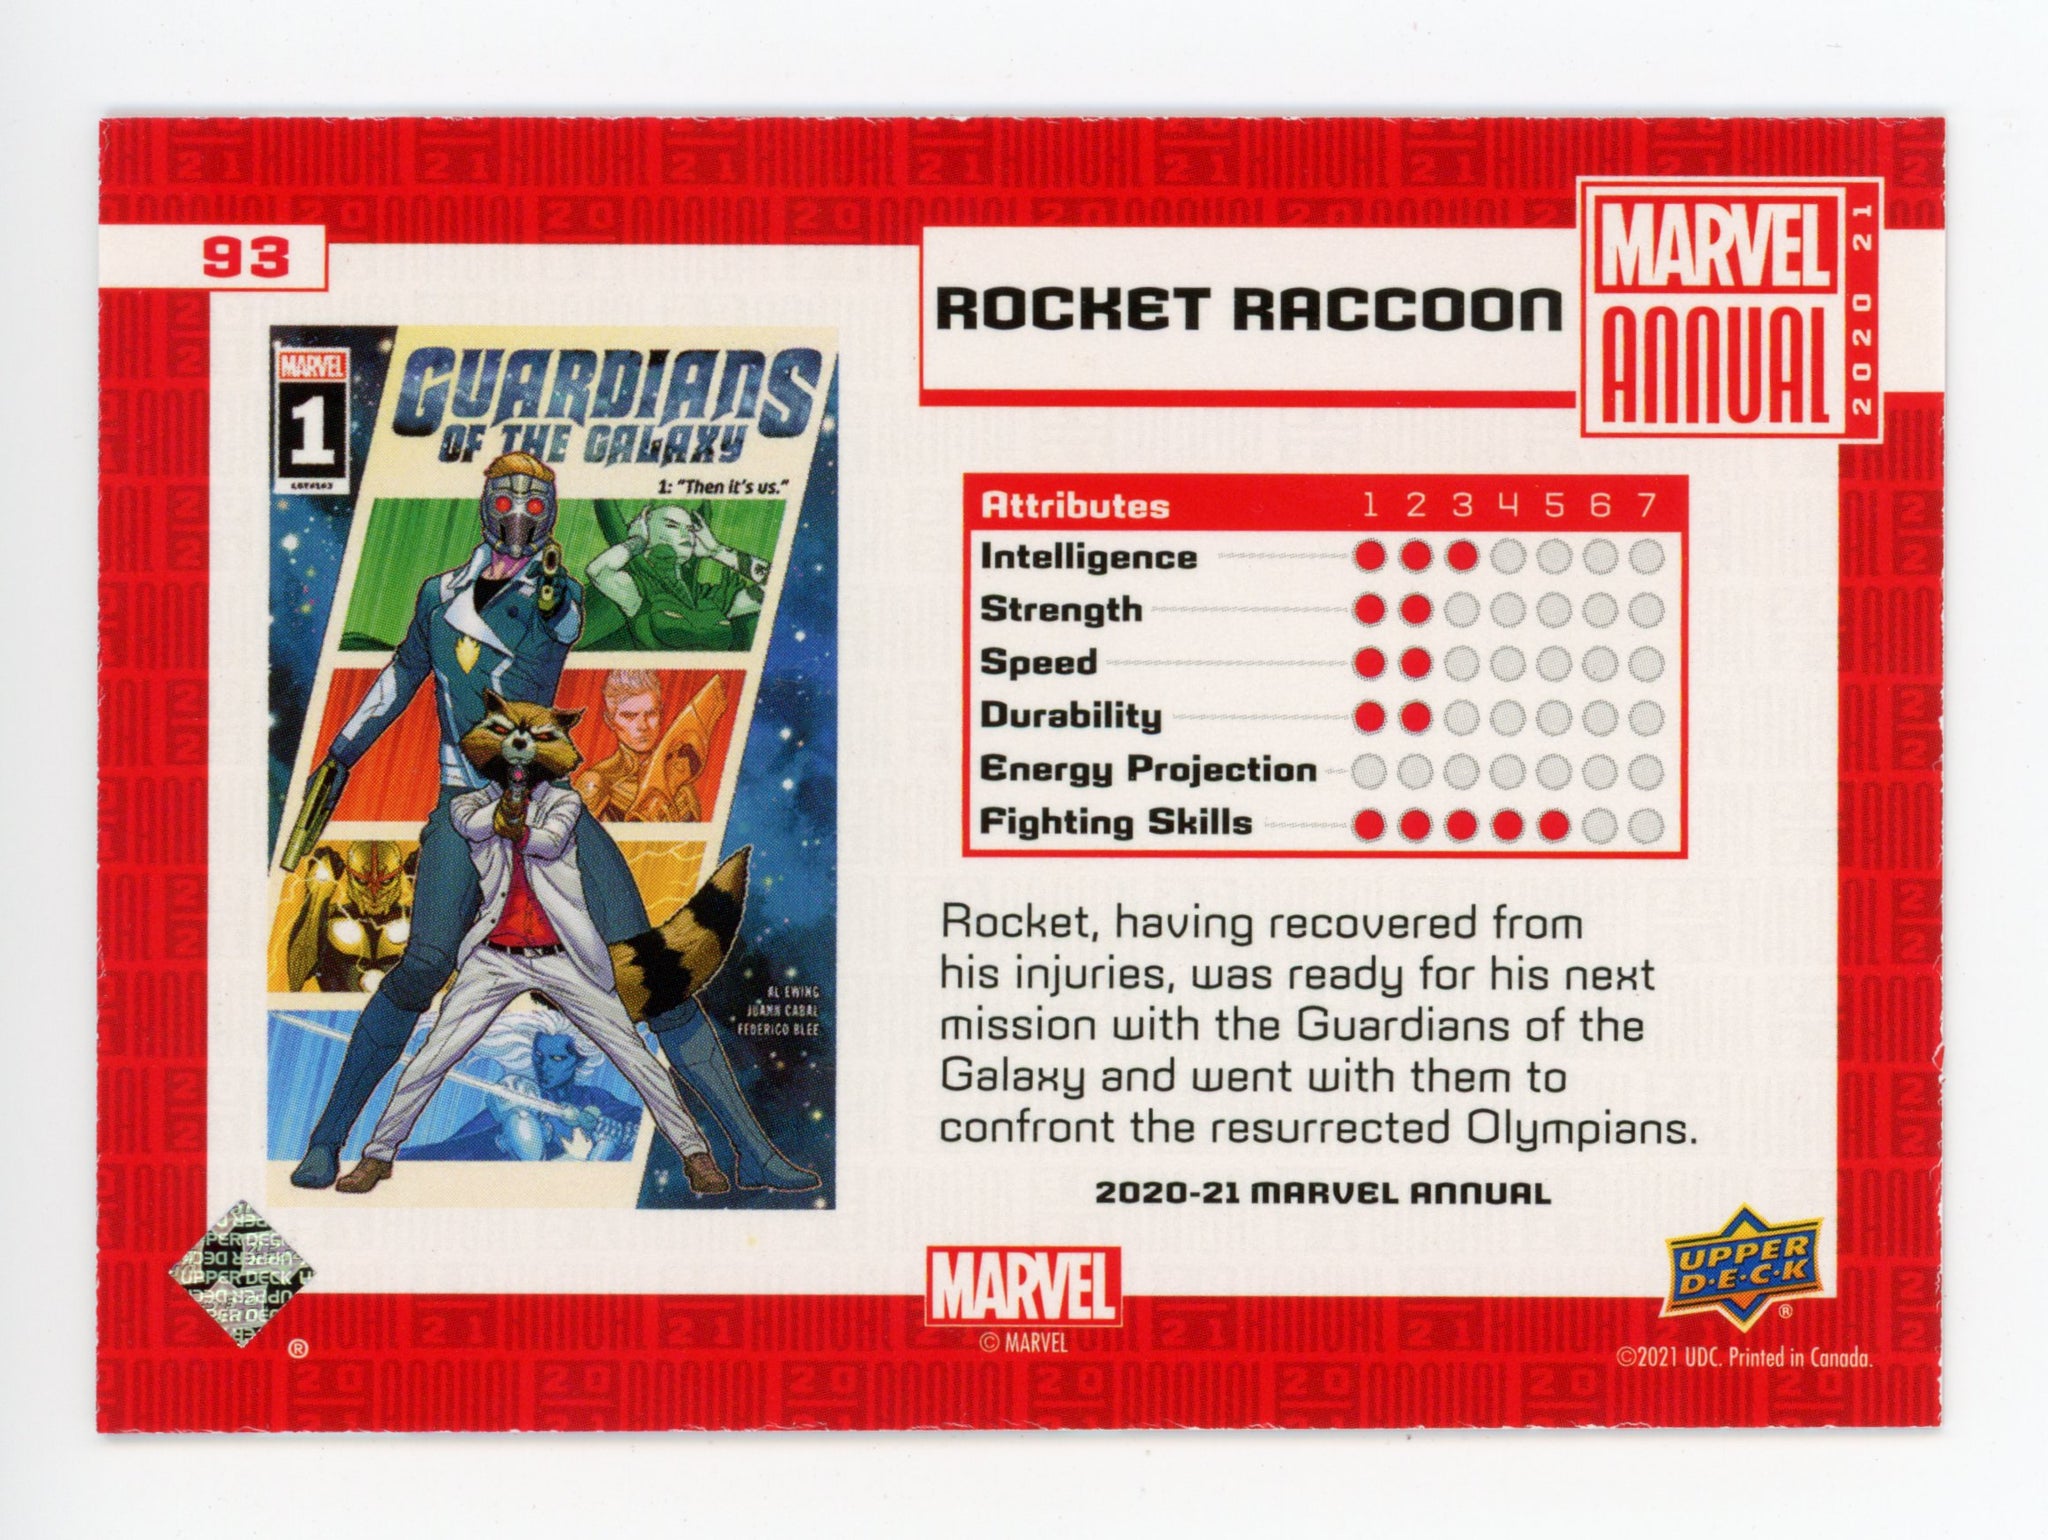 2020-2021 Rocket Raccoon Variant Tier 2 Upper Deck Marvel Annual # 93